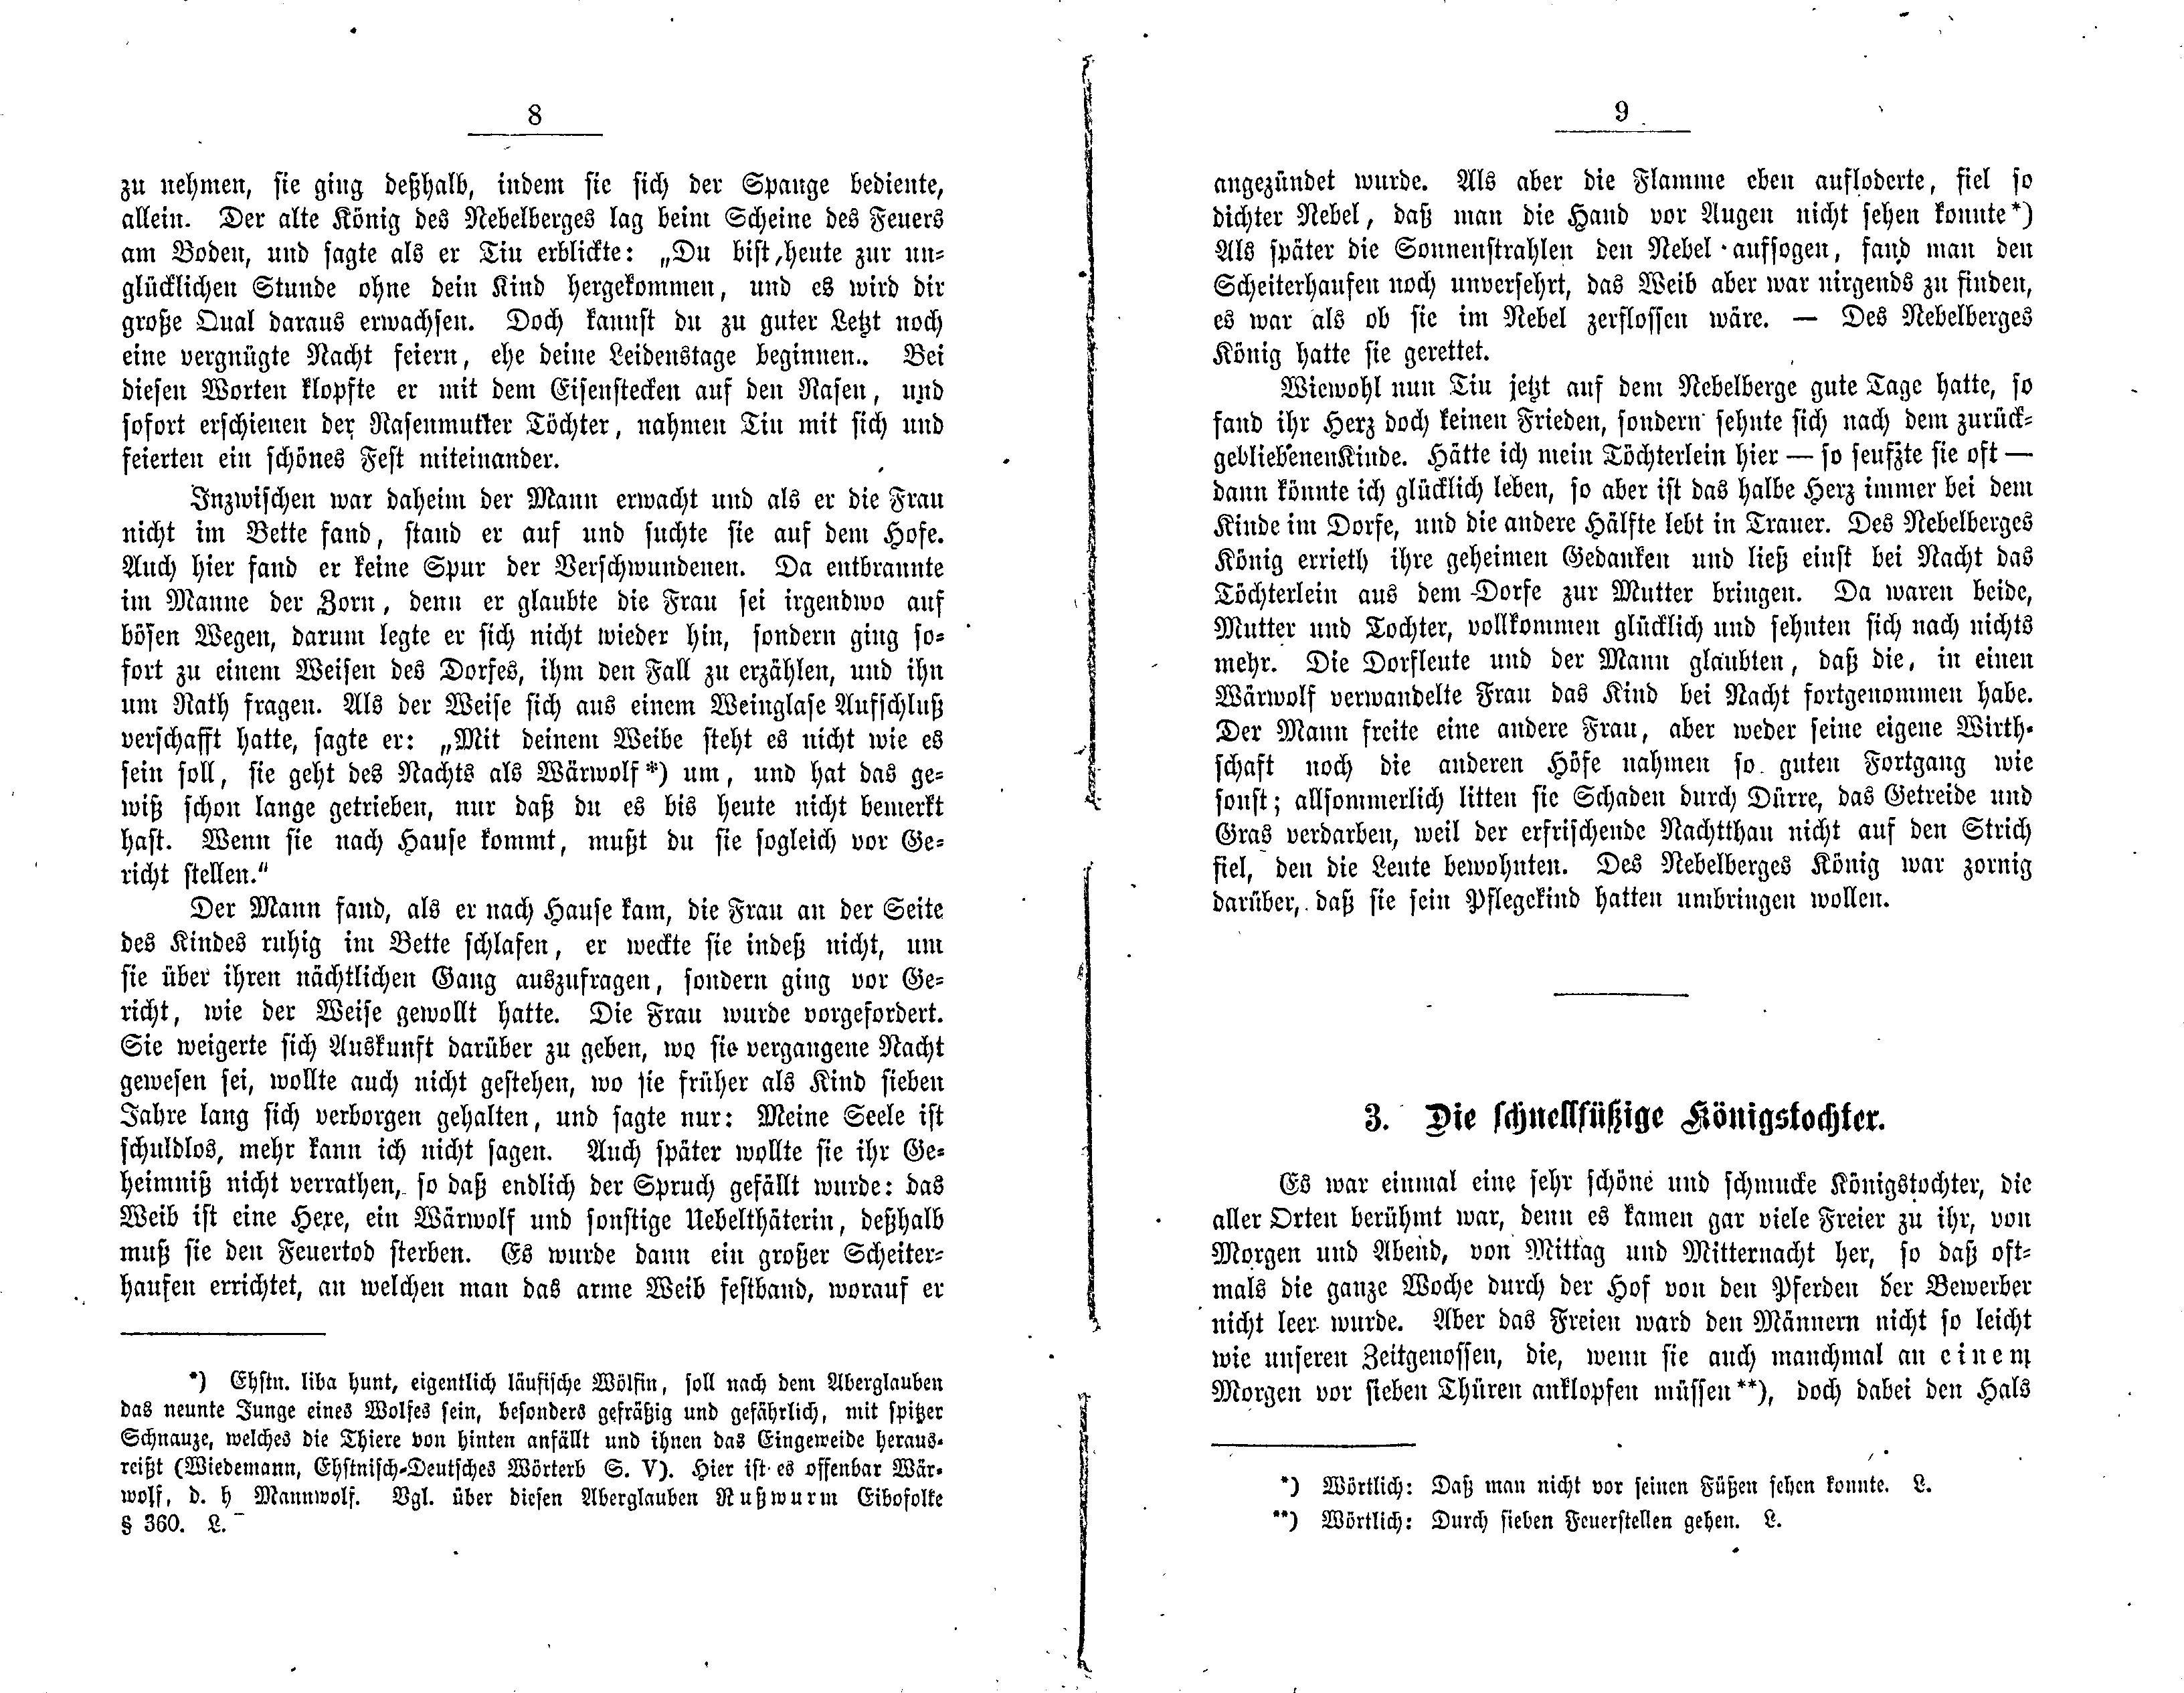 Die schnellfüssige Königstochter (1881) | 1. (8-9) Main body of text